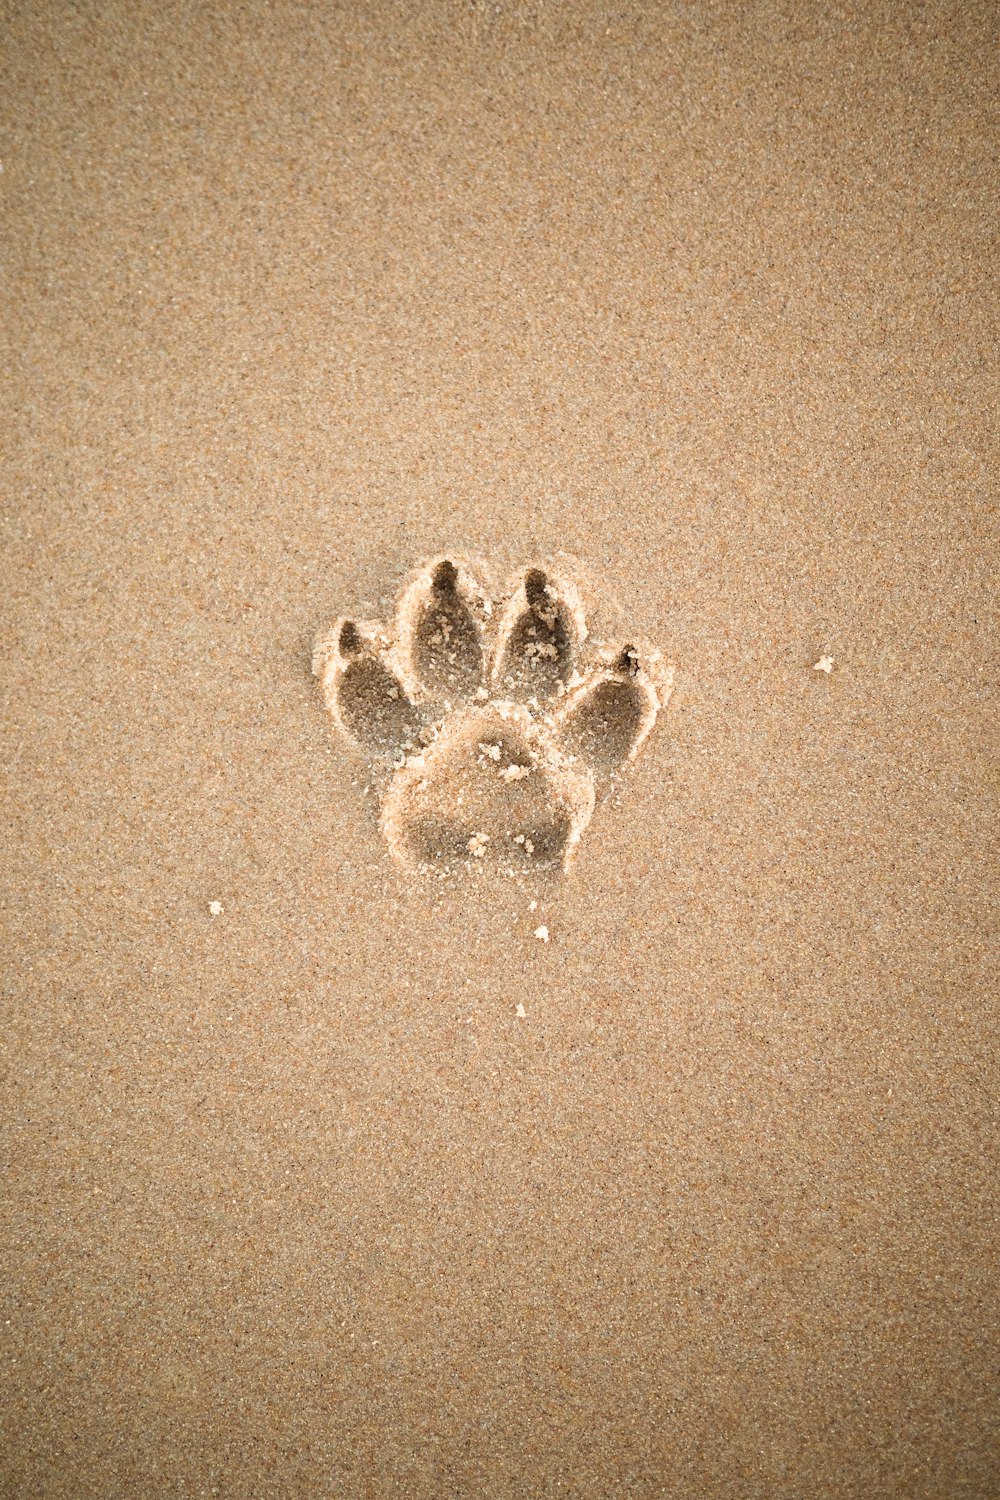 areia marrom com areia em forma de coração